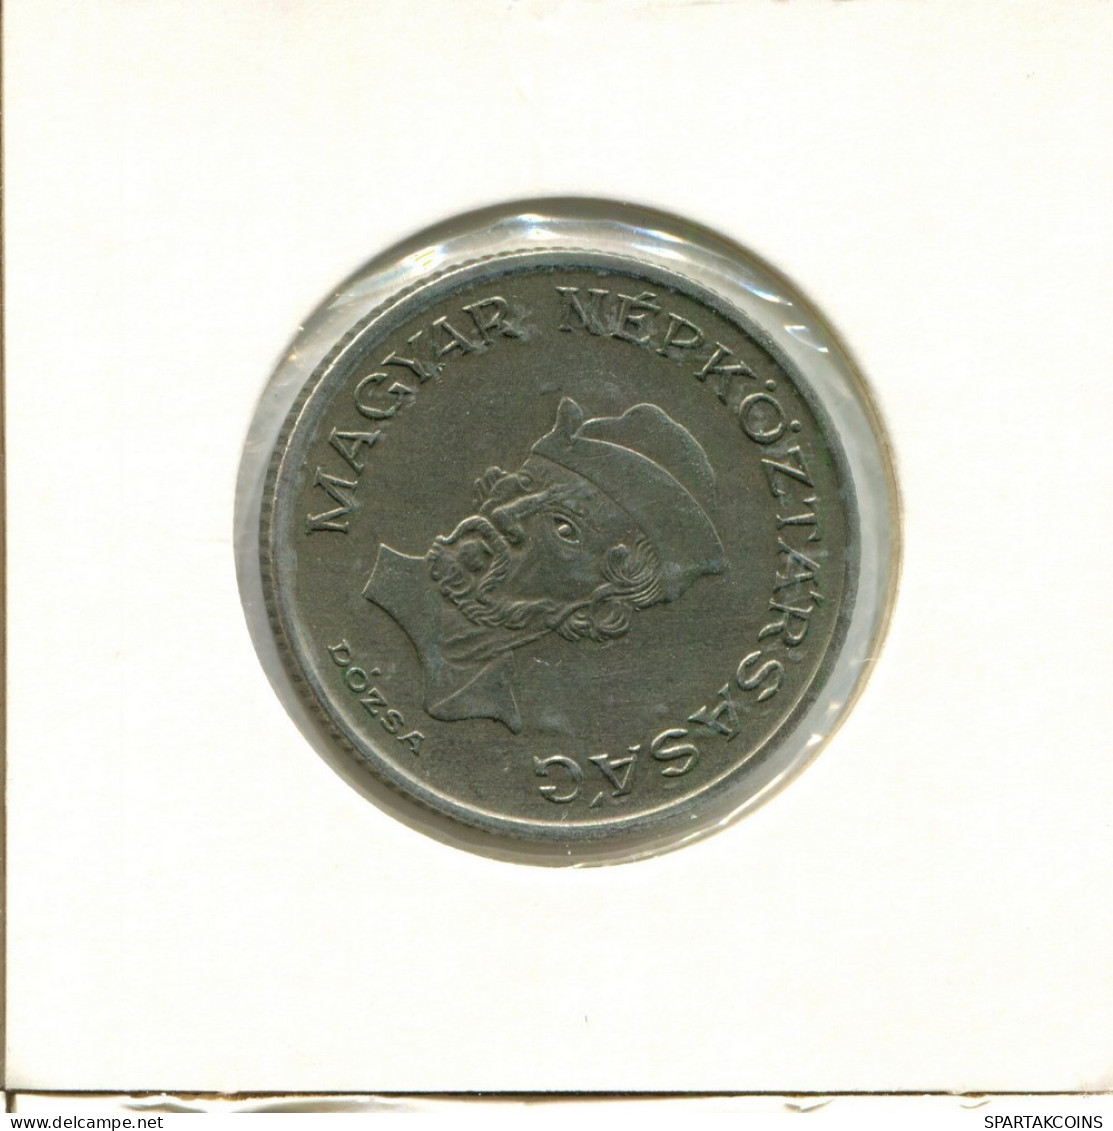 20 FORINT 1983 HUNGRÍA HUNGARY Moneda #AY529.E.A - Hongrie